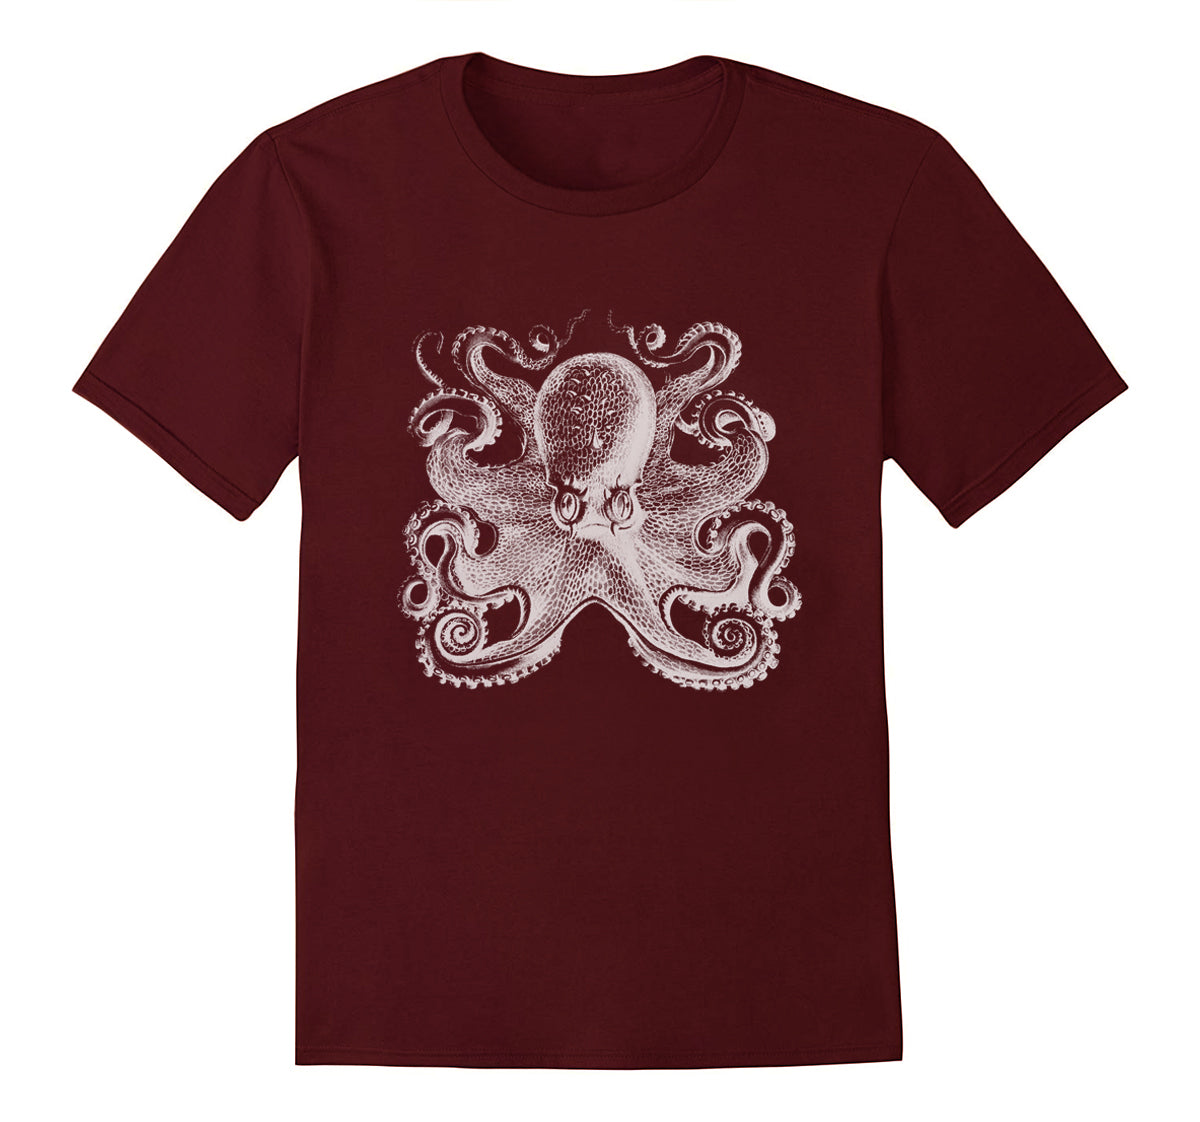 Tshirt OMICIDIO POLPOSO L uomo polpo funny octopus fishing Bari